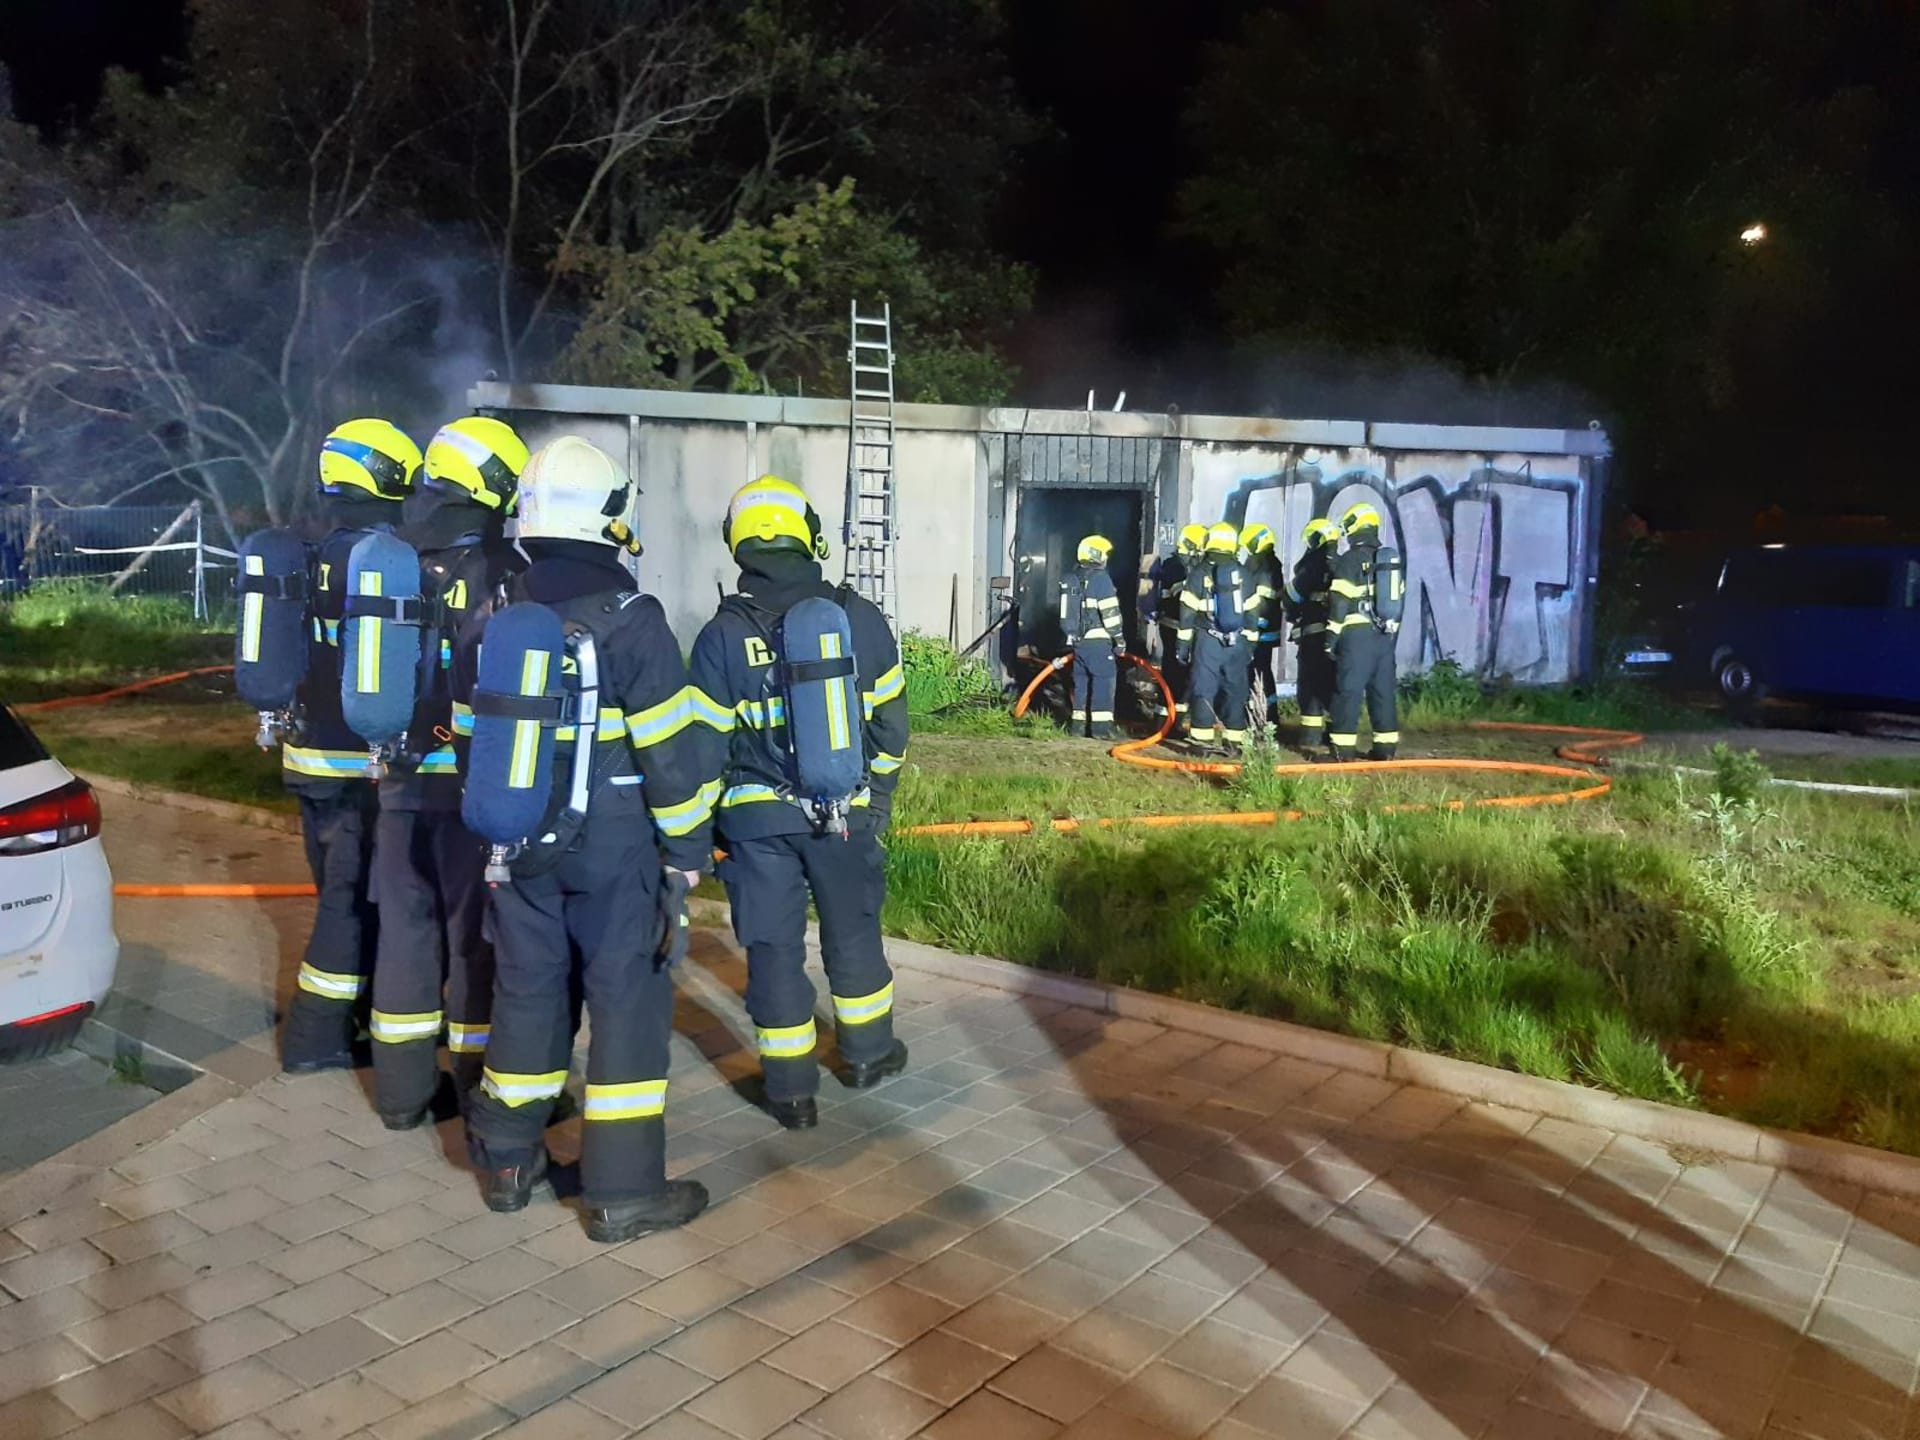  Zasahující jednotky používaly dýchací přístroje a pomocí termokamery hledaly ohniska požáru.